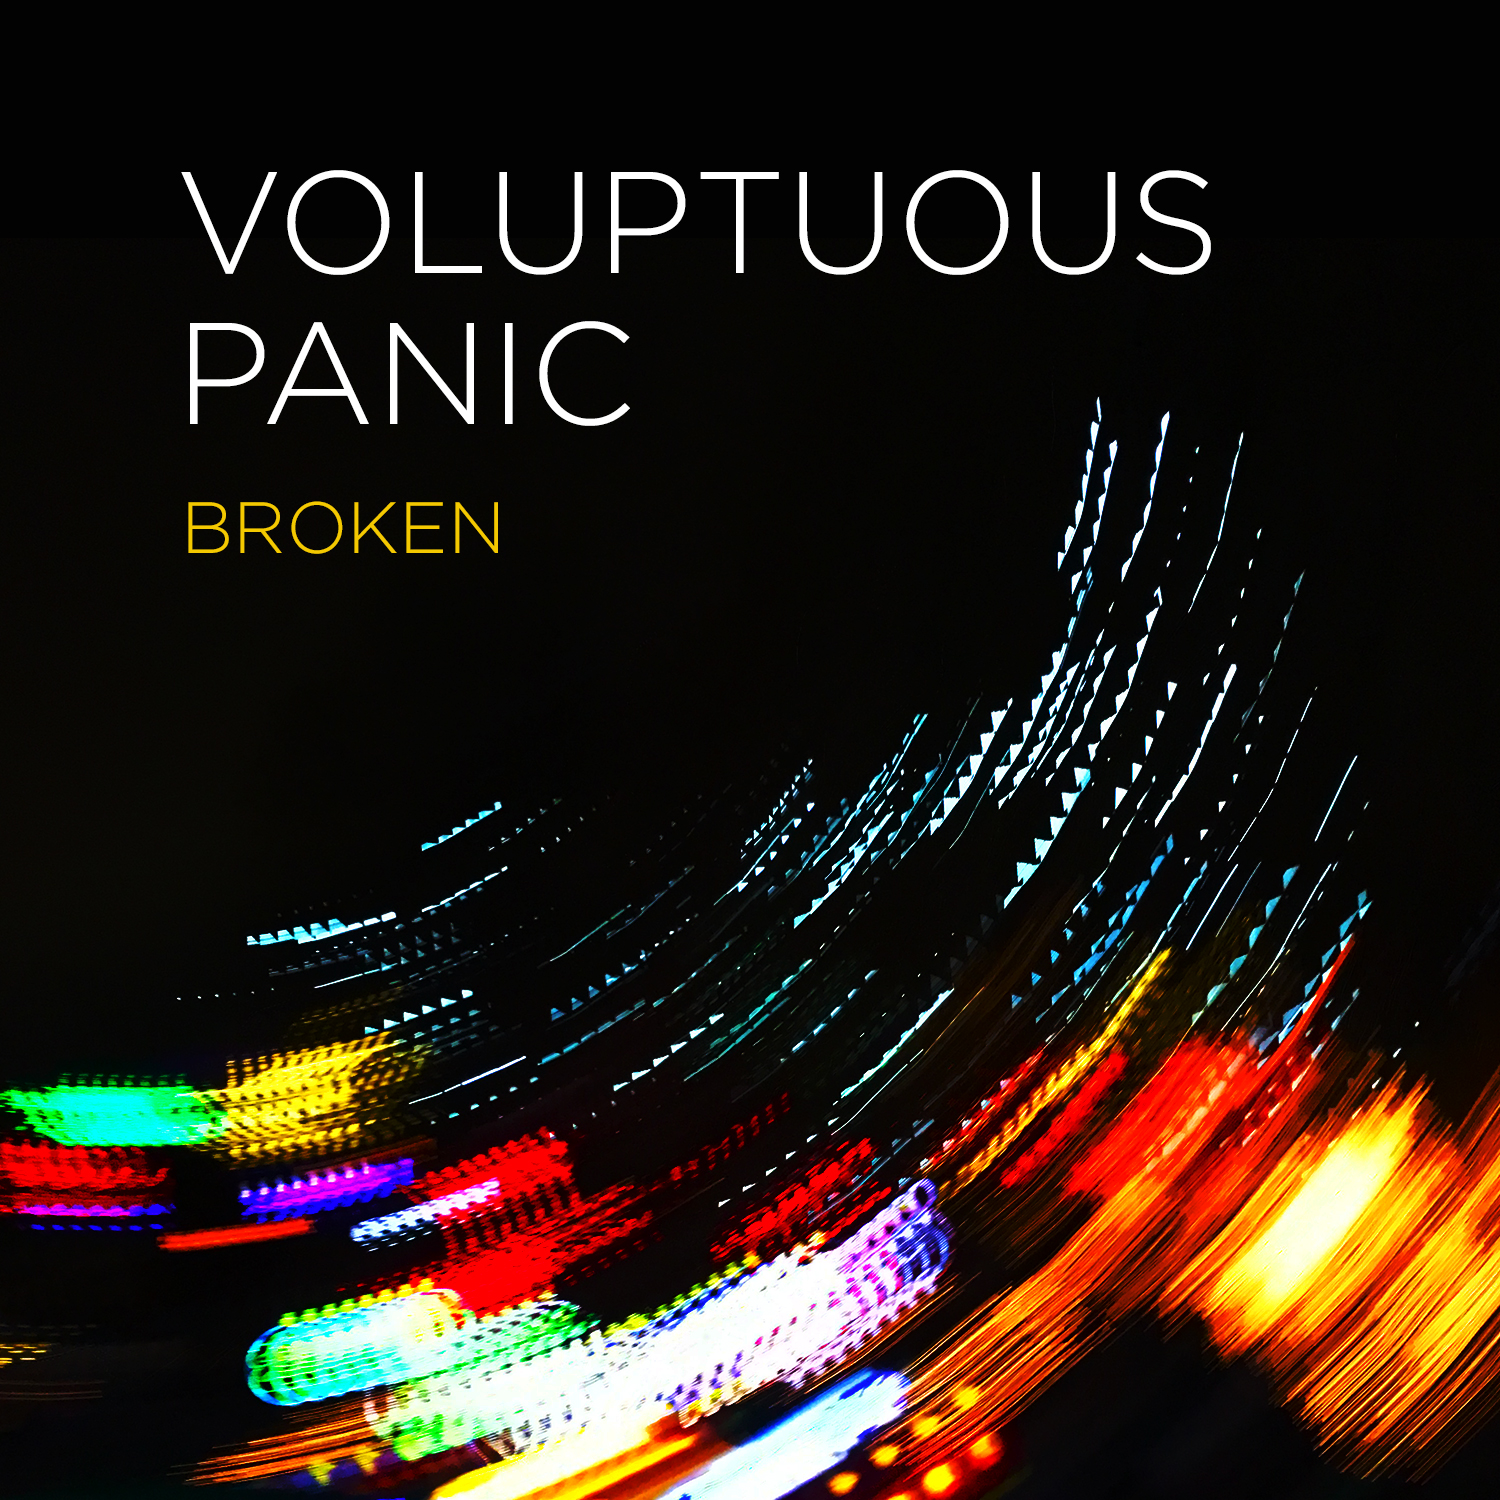 Broken by Voluptuous Panic